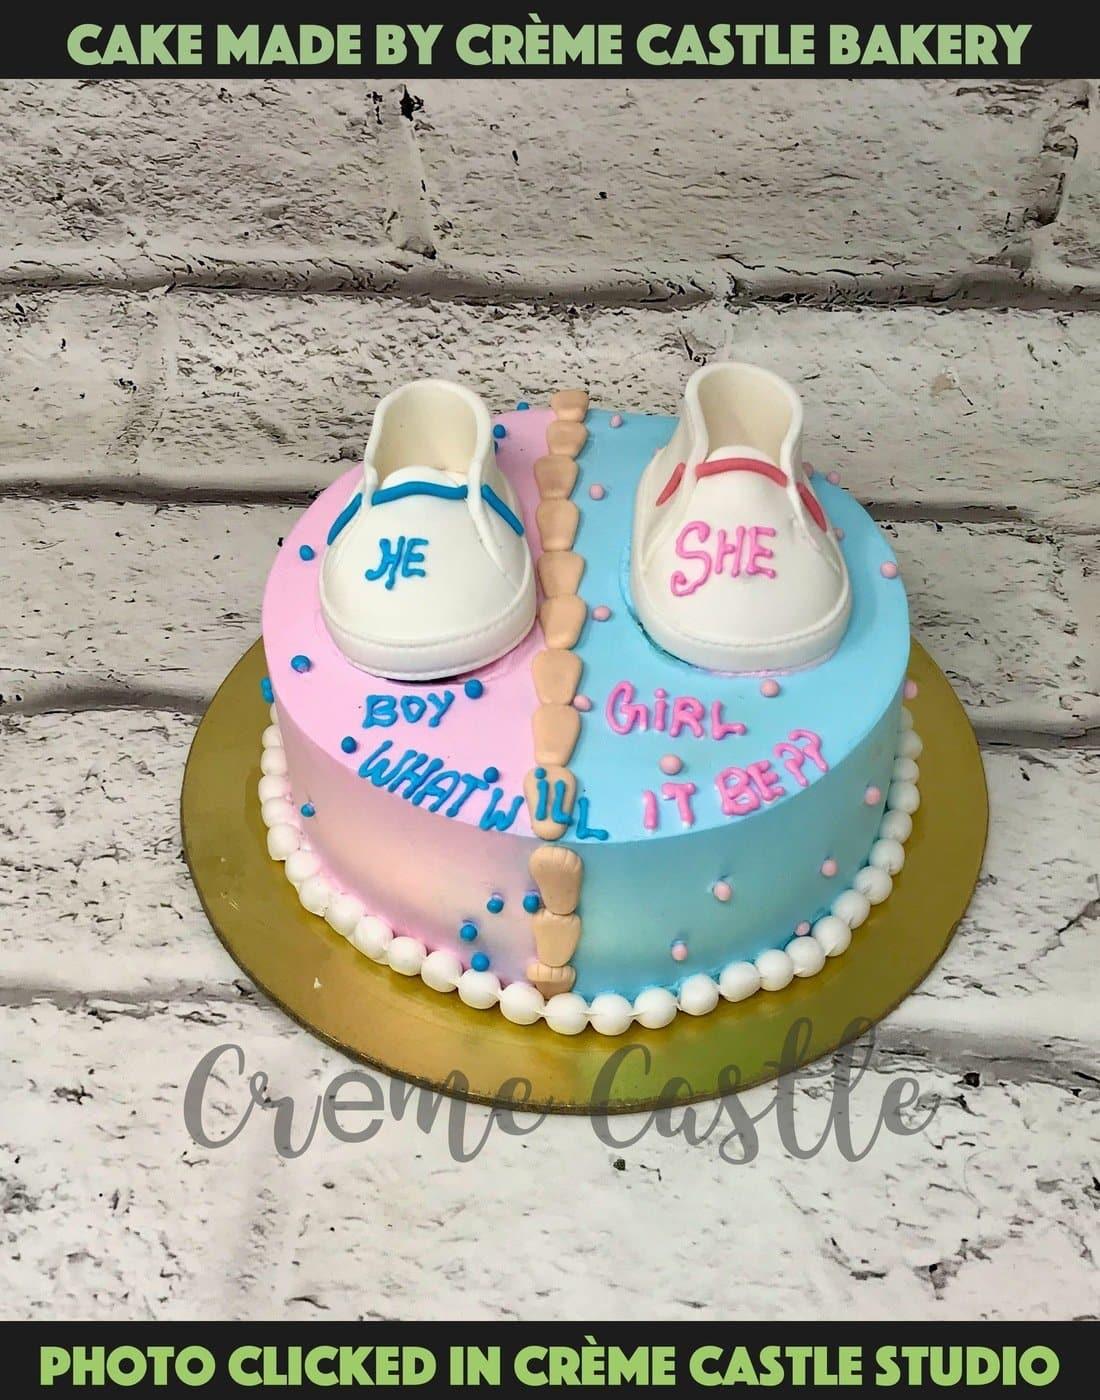 Baby Shower Cakes | Kids Cake Designs Noida & Gurgaon - Creme ...